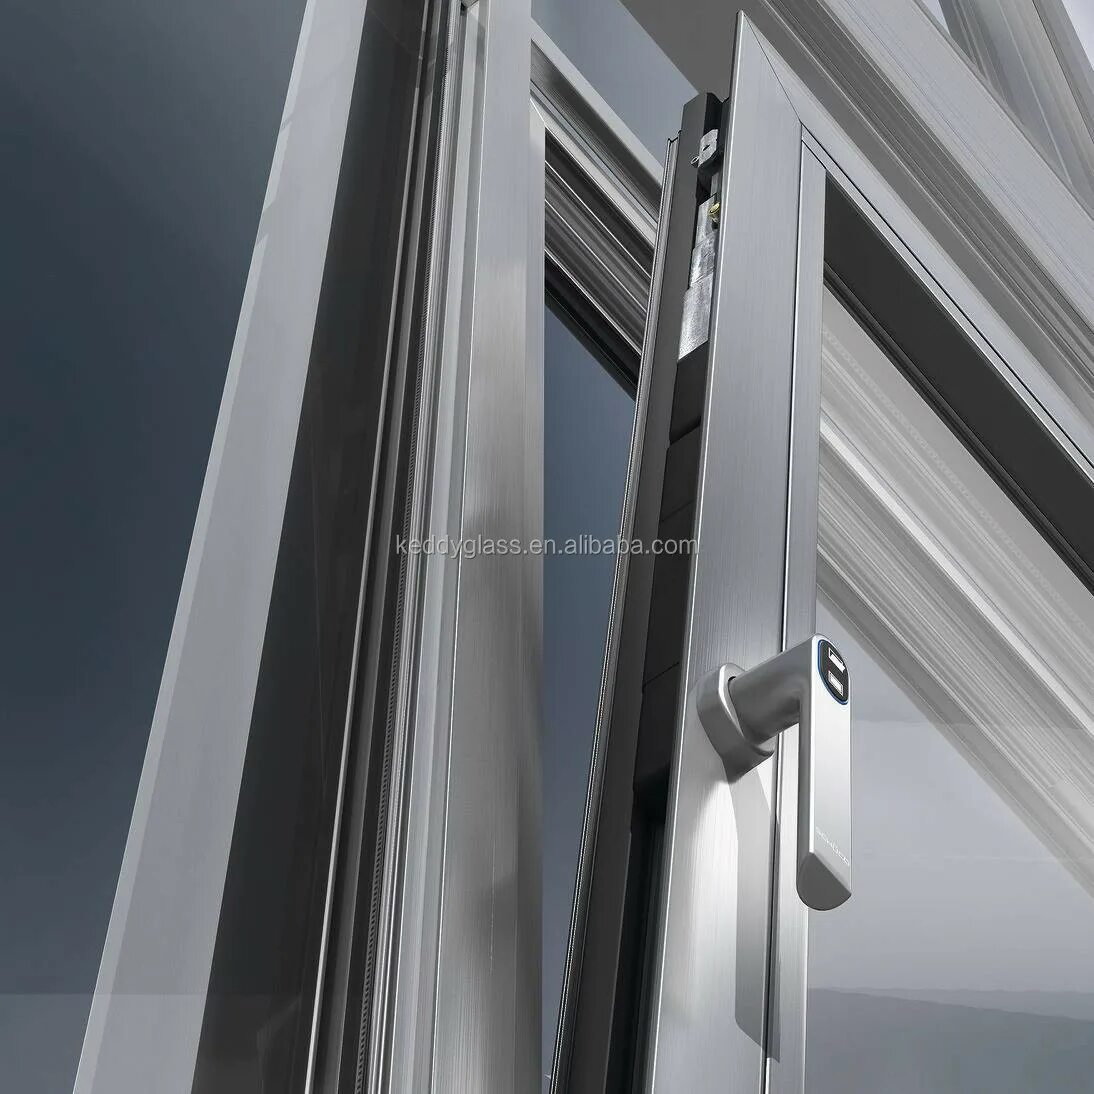 Шуко профиль алюминиевый. Алюминиевые окна Schuco. Алютех окна из алюминиевого профиля. Алюминиевые окна Шуко. Ремонт алюминиевых окон в спб